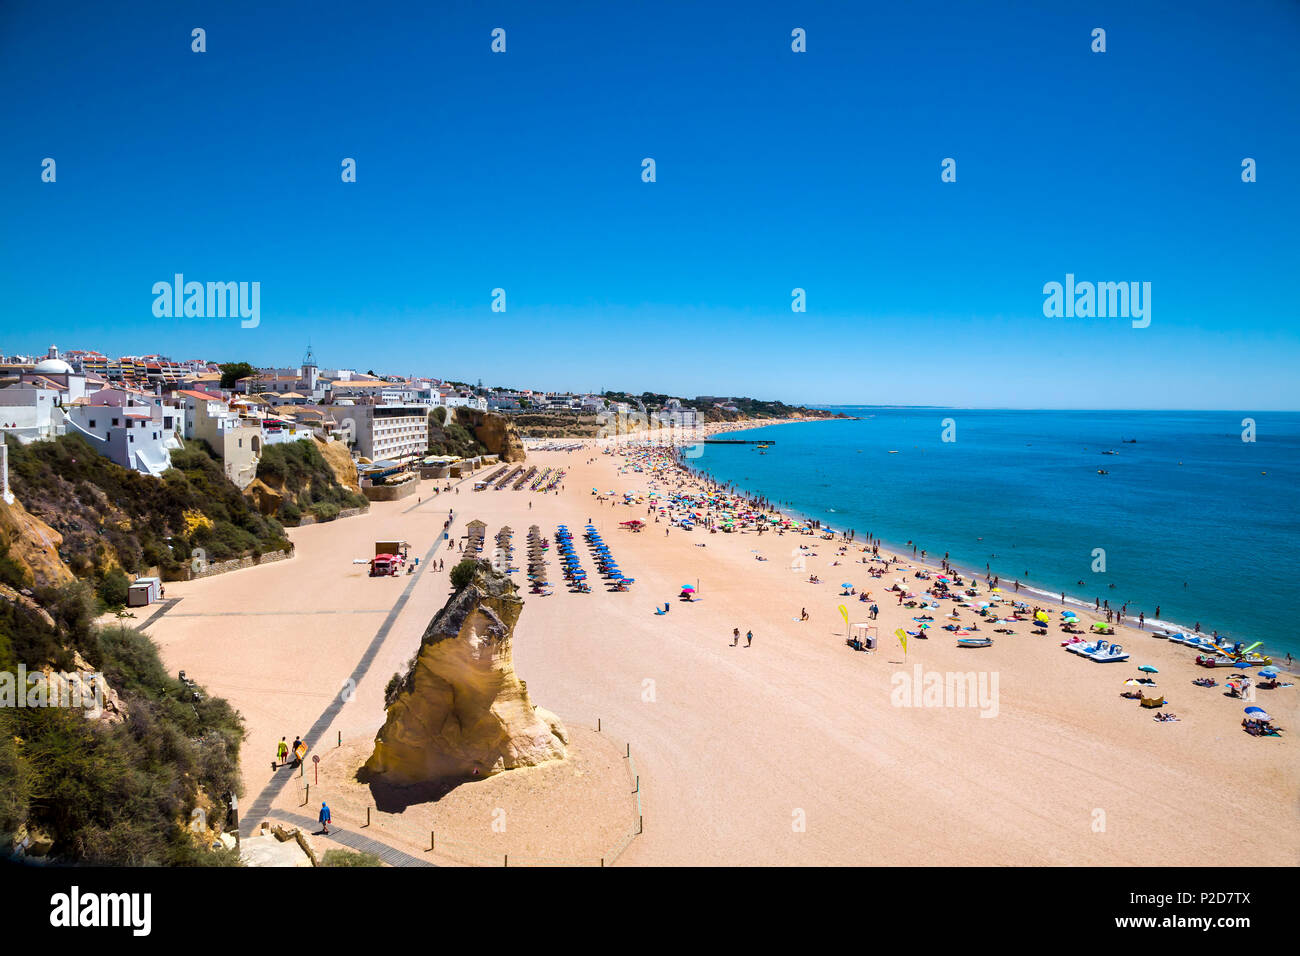 Beach, Praia dos Pescadores, Albufeira, Algarve, Portugal Stock Photo